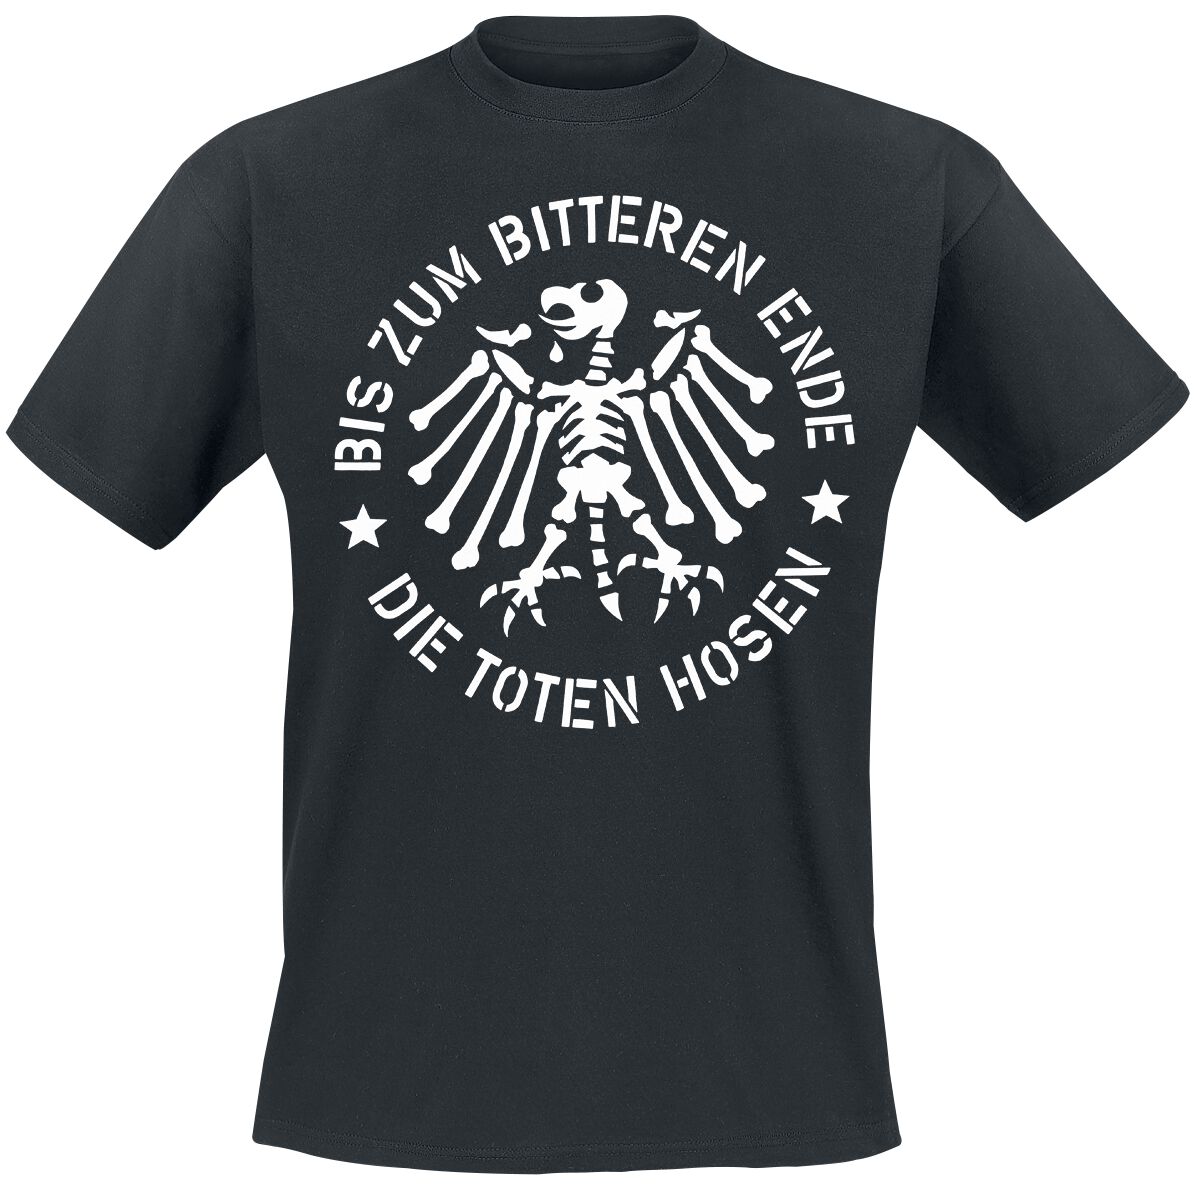 Die Toten Hosen T-Shirt - Bis zum bitteren Ende - S bis XXL - für Männer - Größe M - schwarz  - Lizenziertes Merchandise!